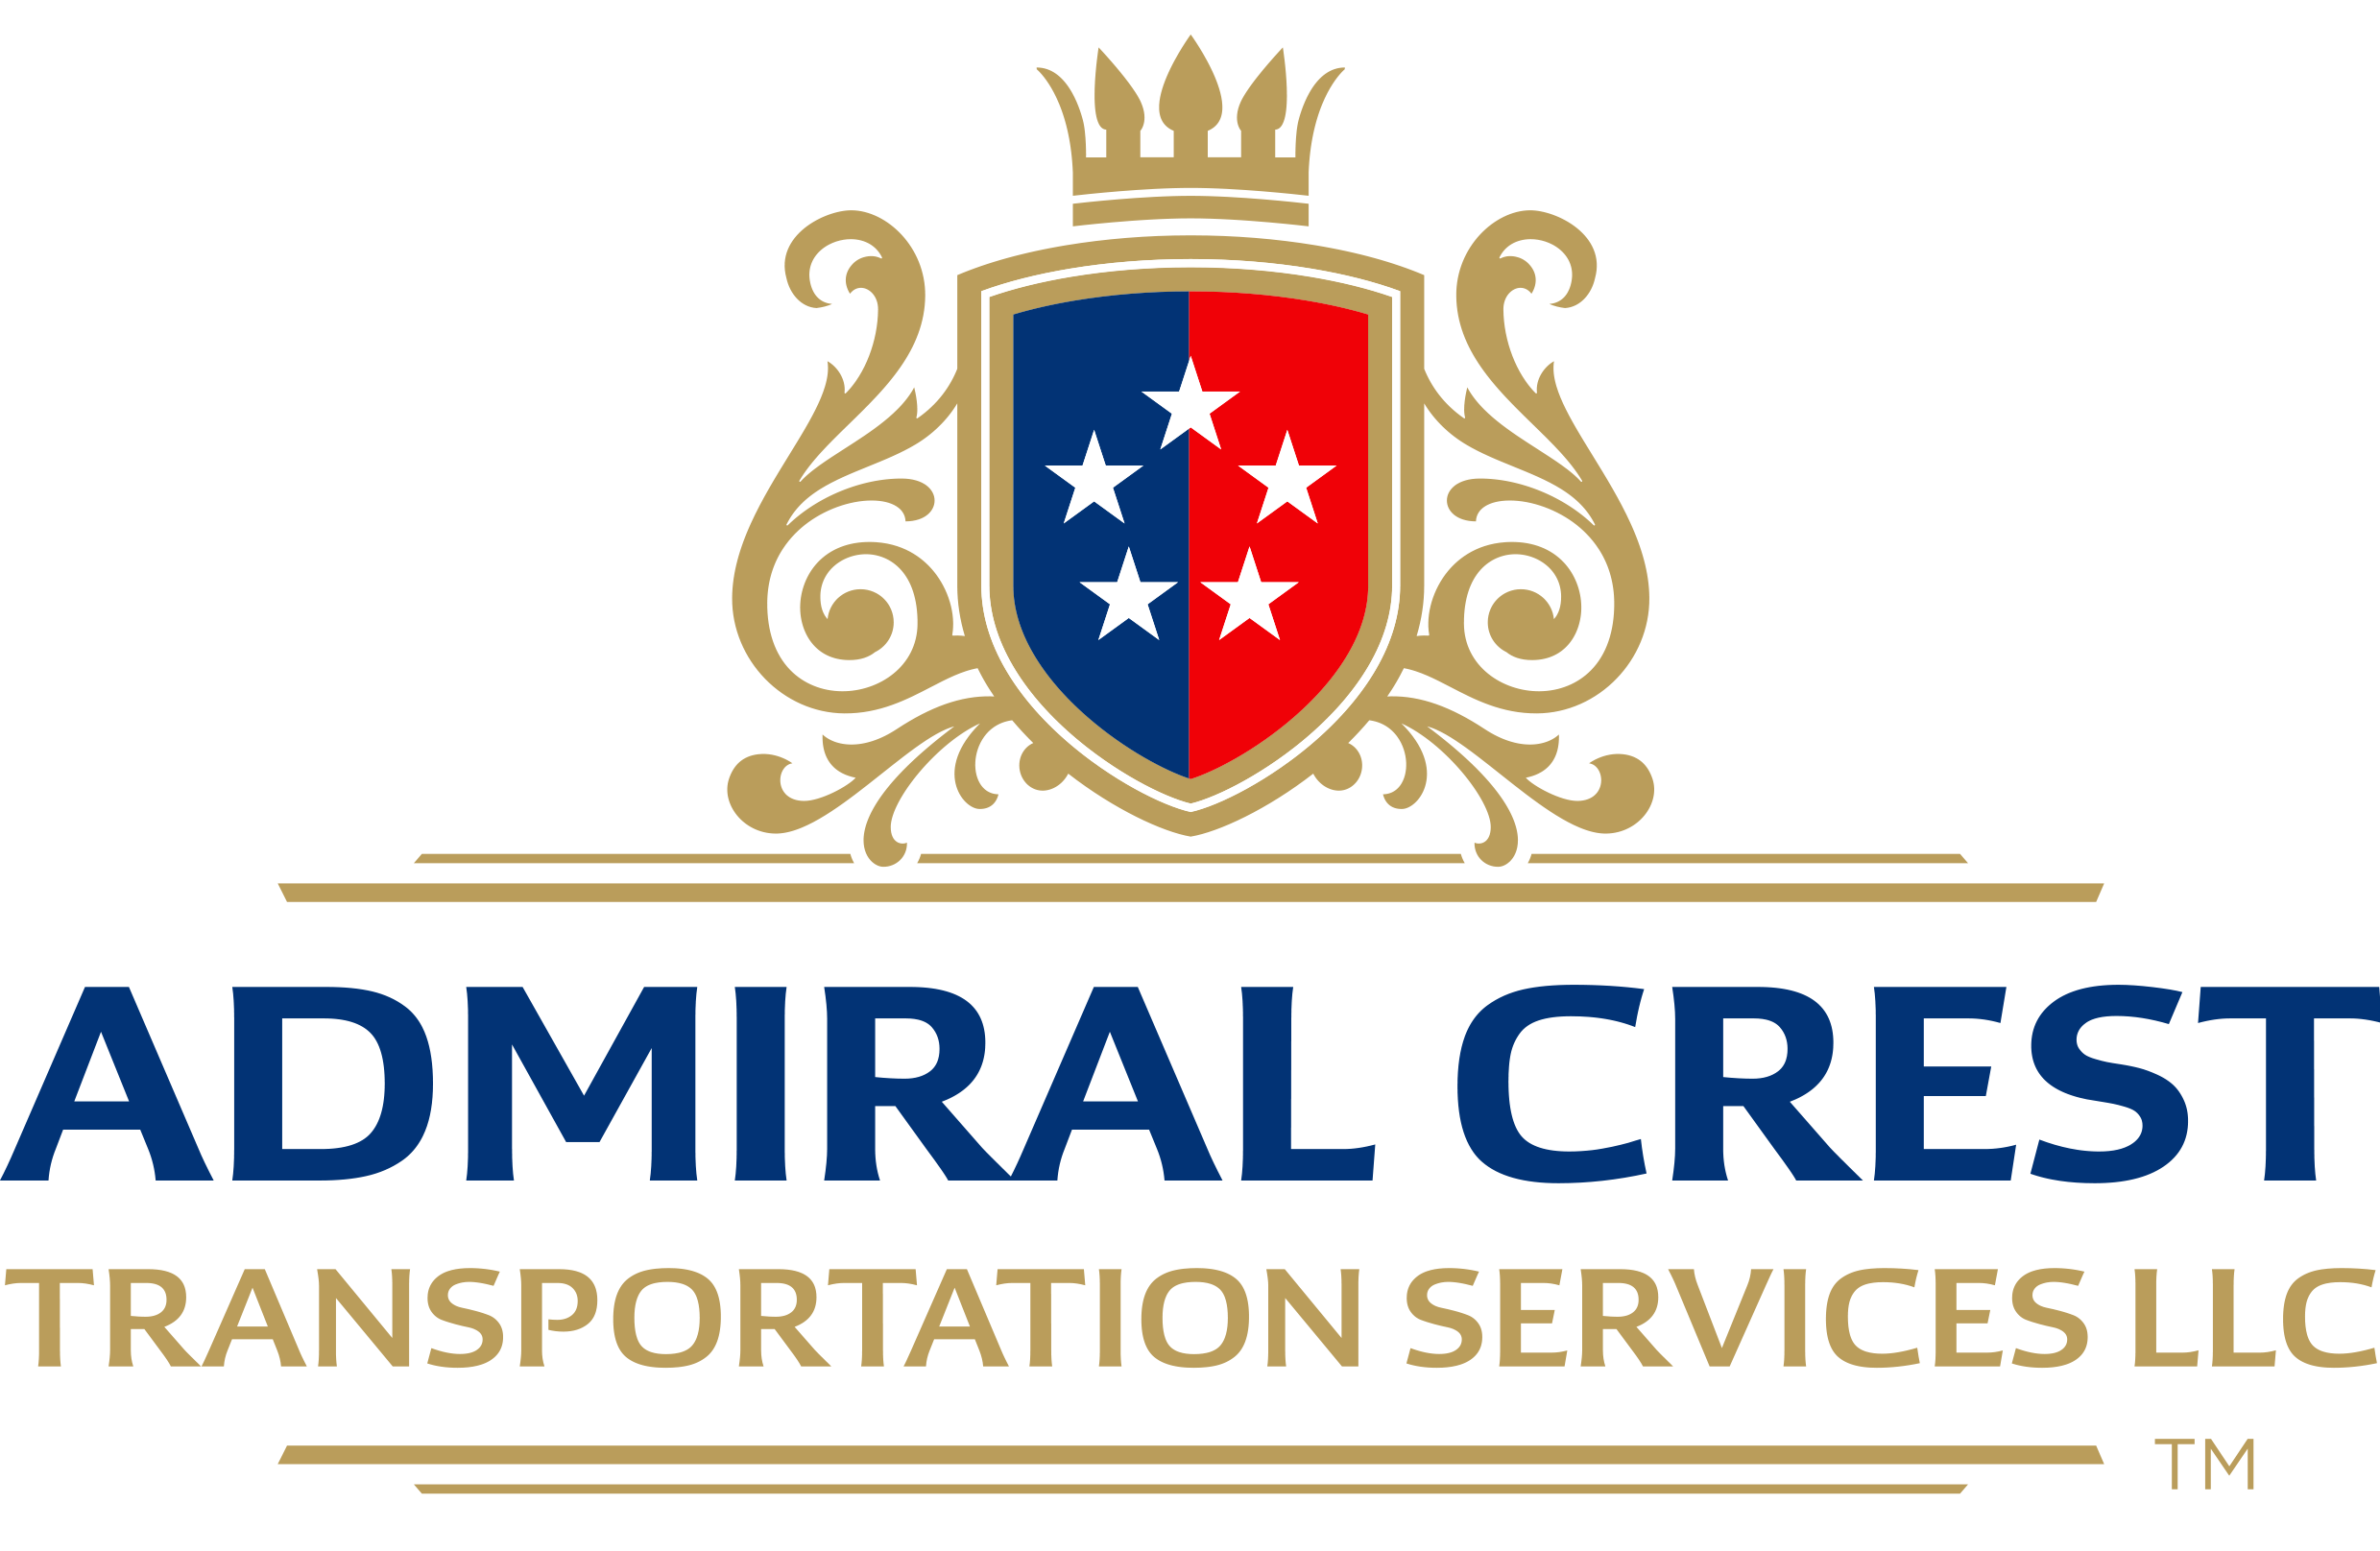 Admiral Logos Transportation